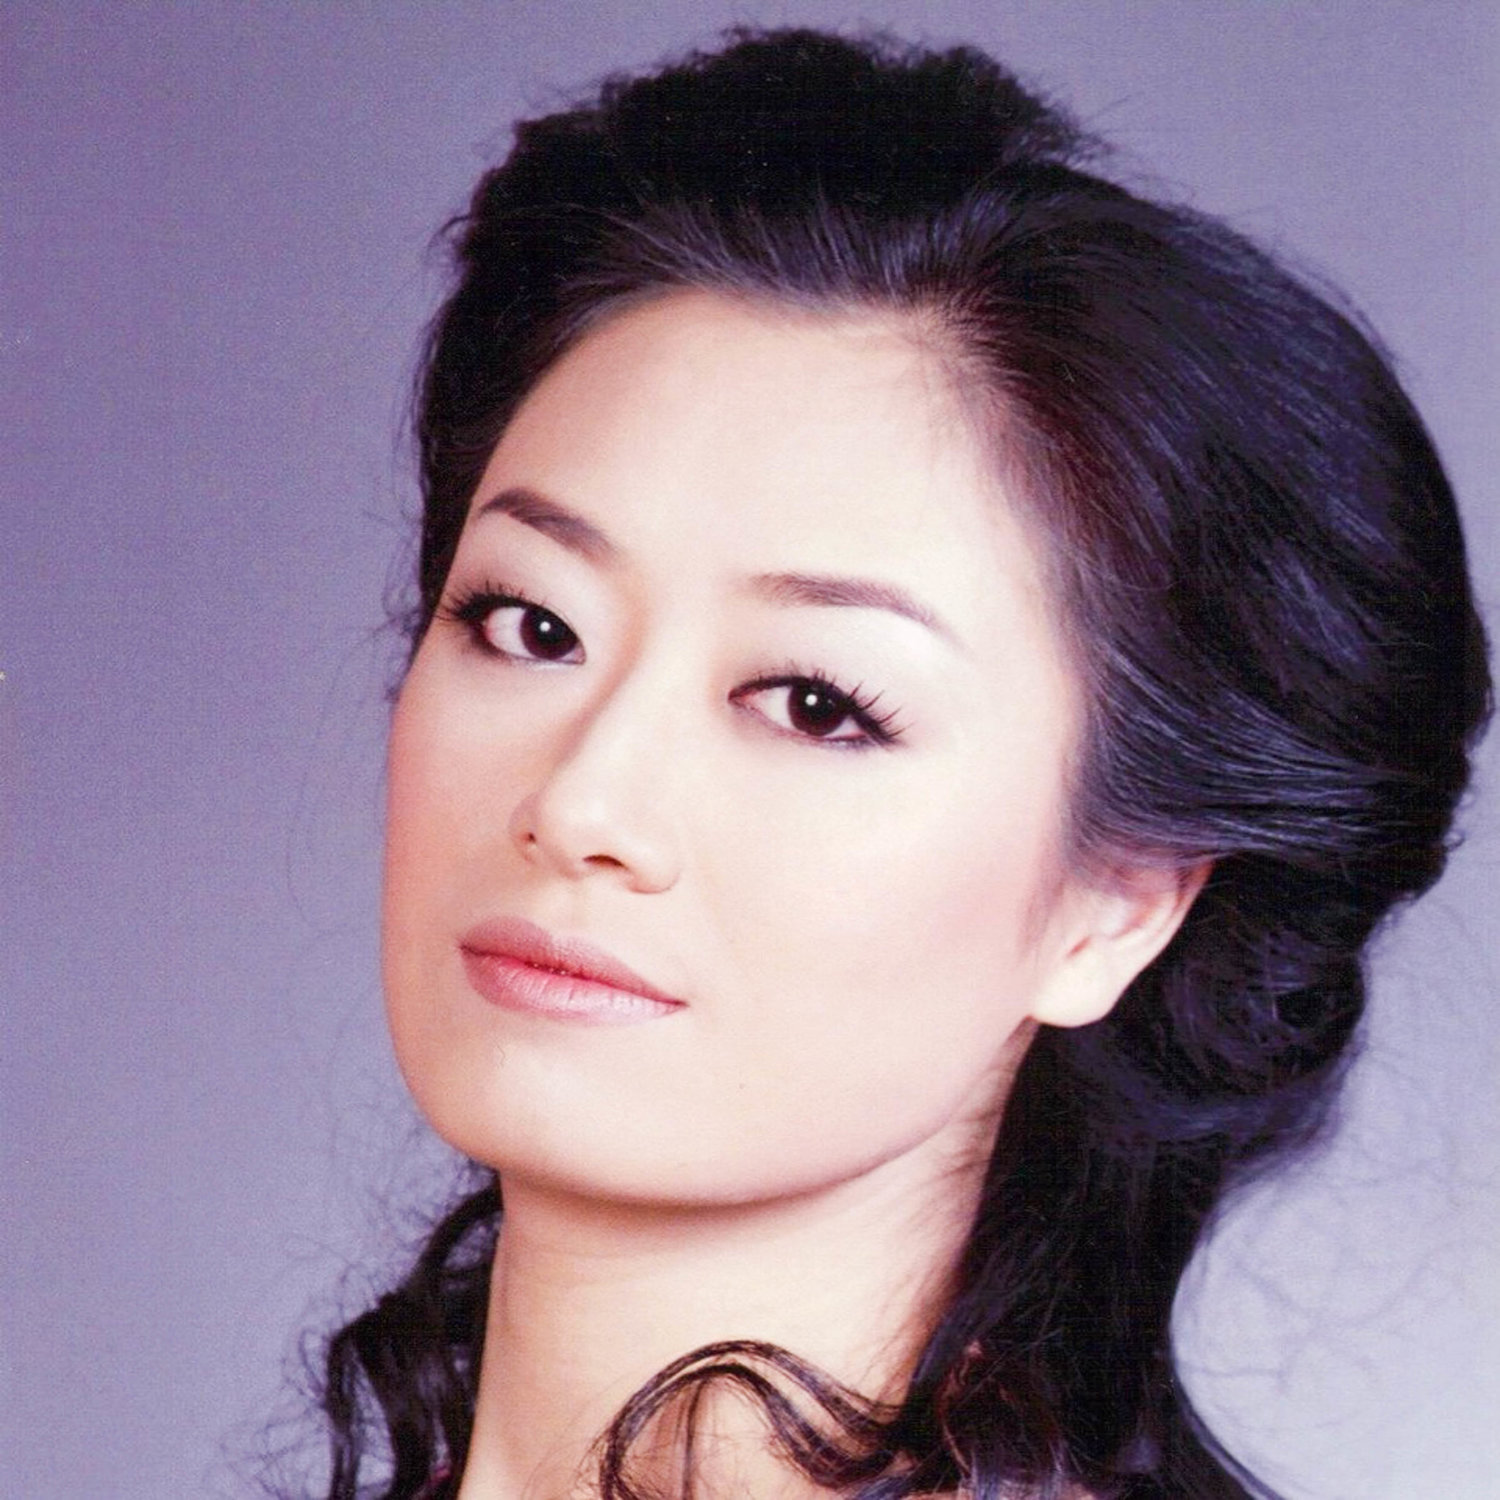 Ying Wu